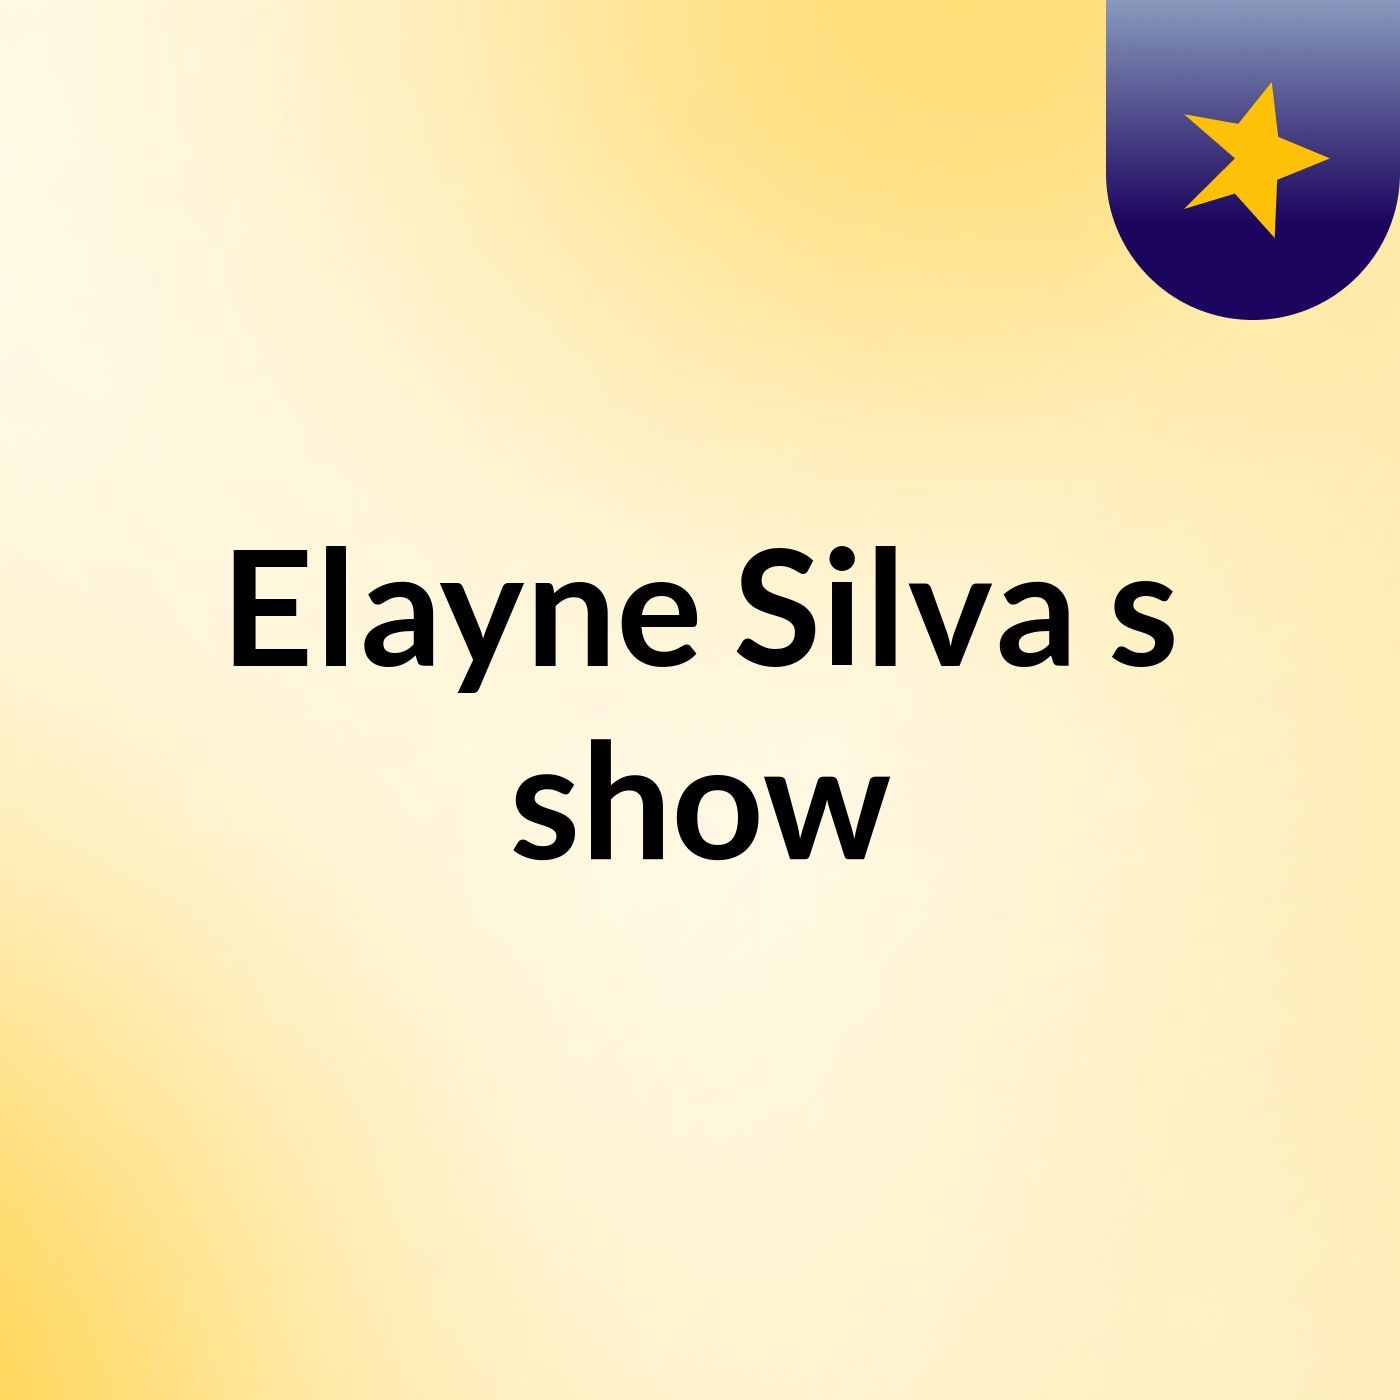 Elayne Silva's show